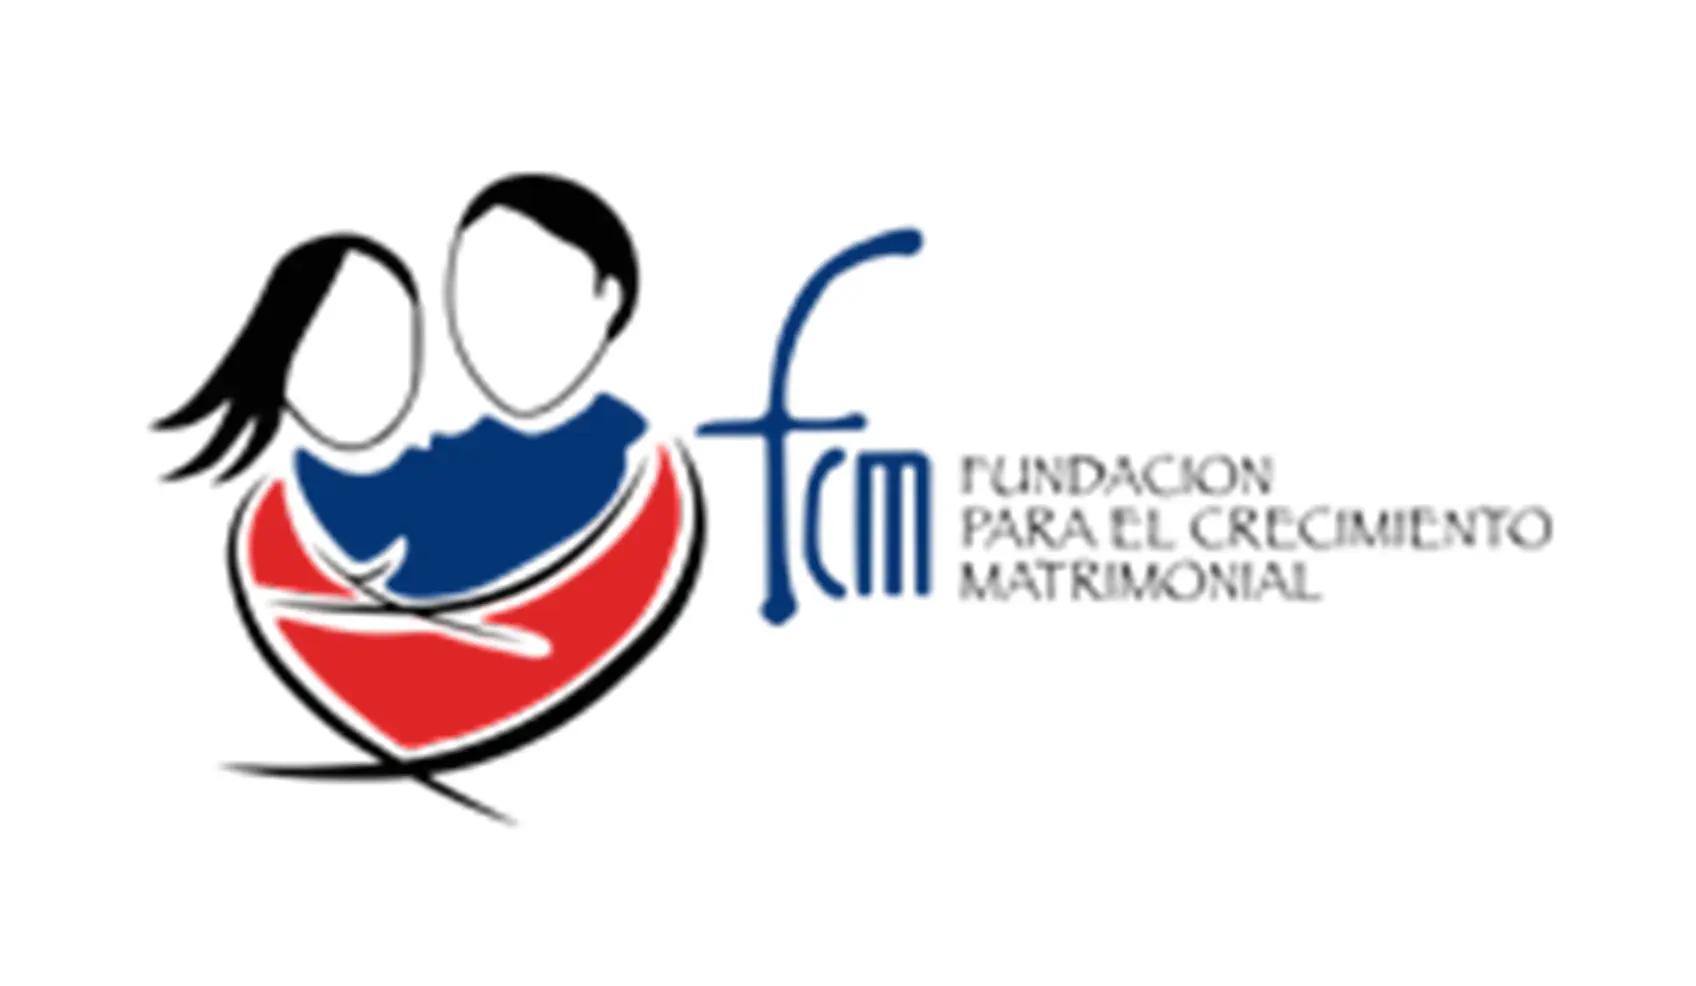 Logo Fundación para el crecimiento matrimonial